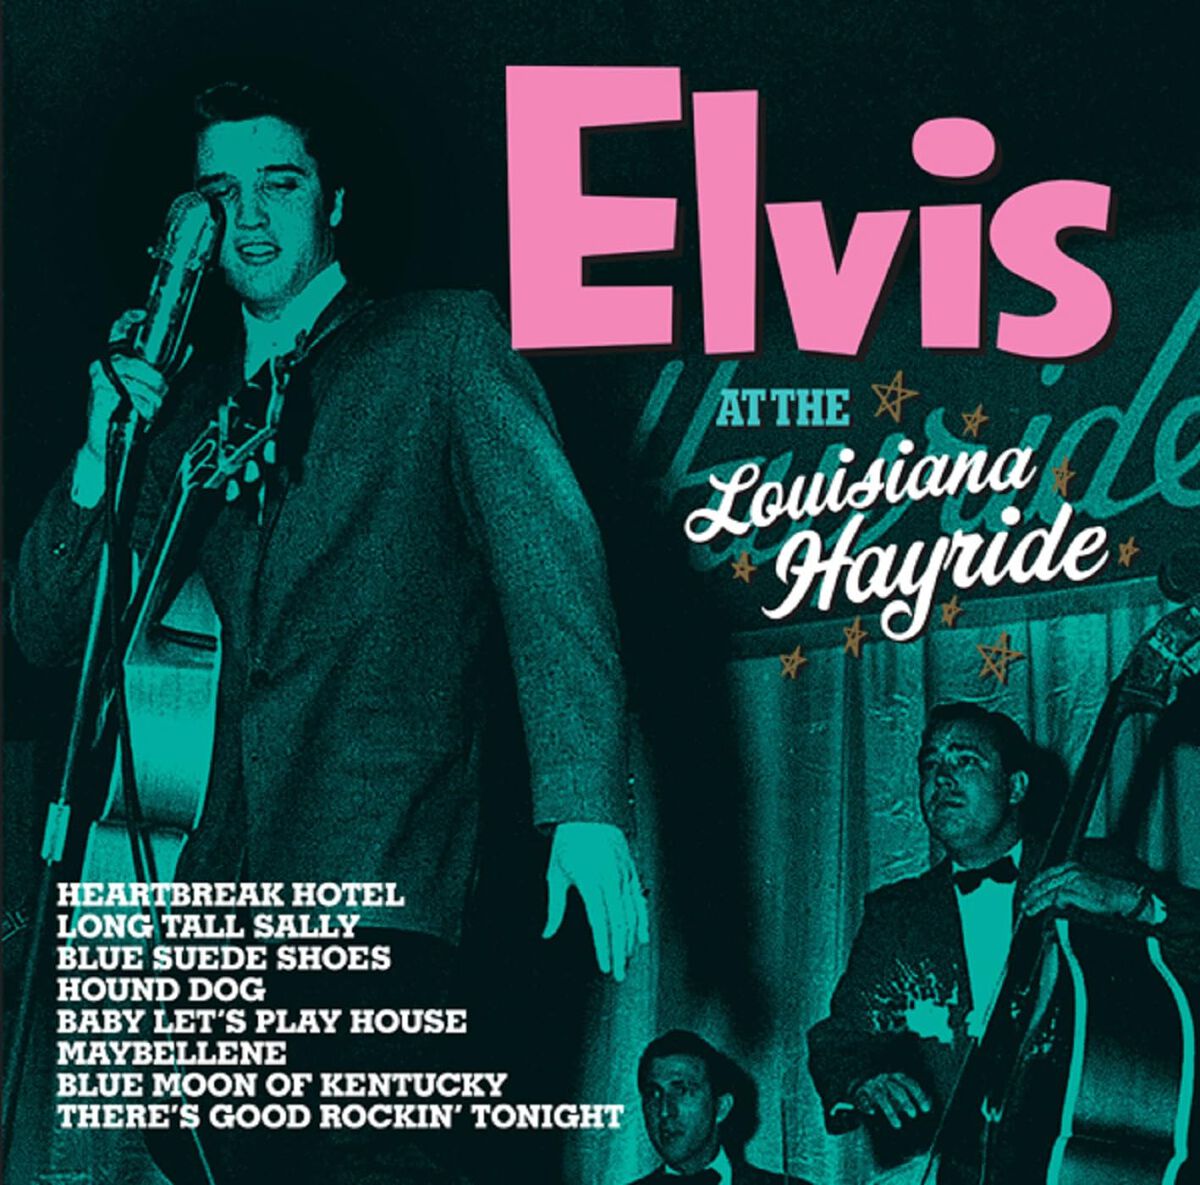 Levně Presley, Elvis Hayride shows live 1955 LP standard